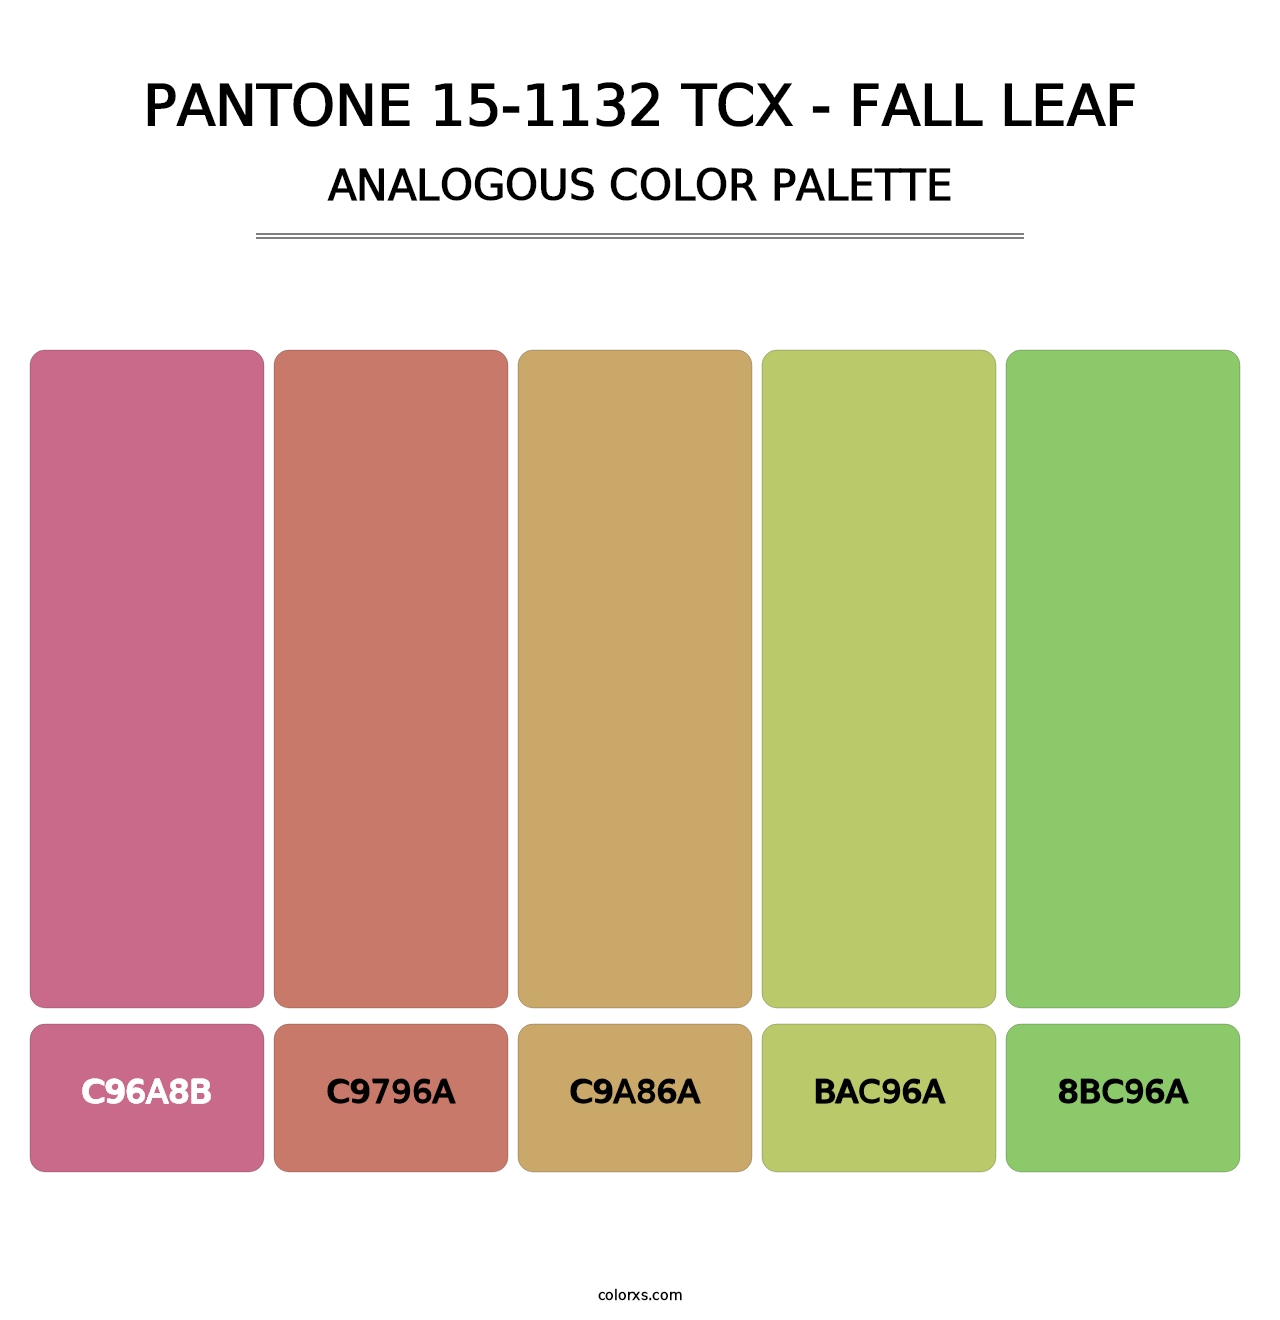 PANTONE 15-1132 TCX - Fall Leaf - Analogous Color Palette